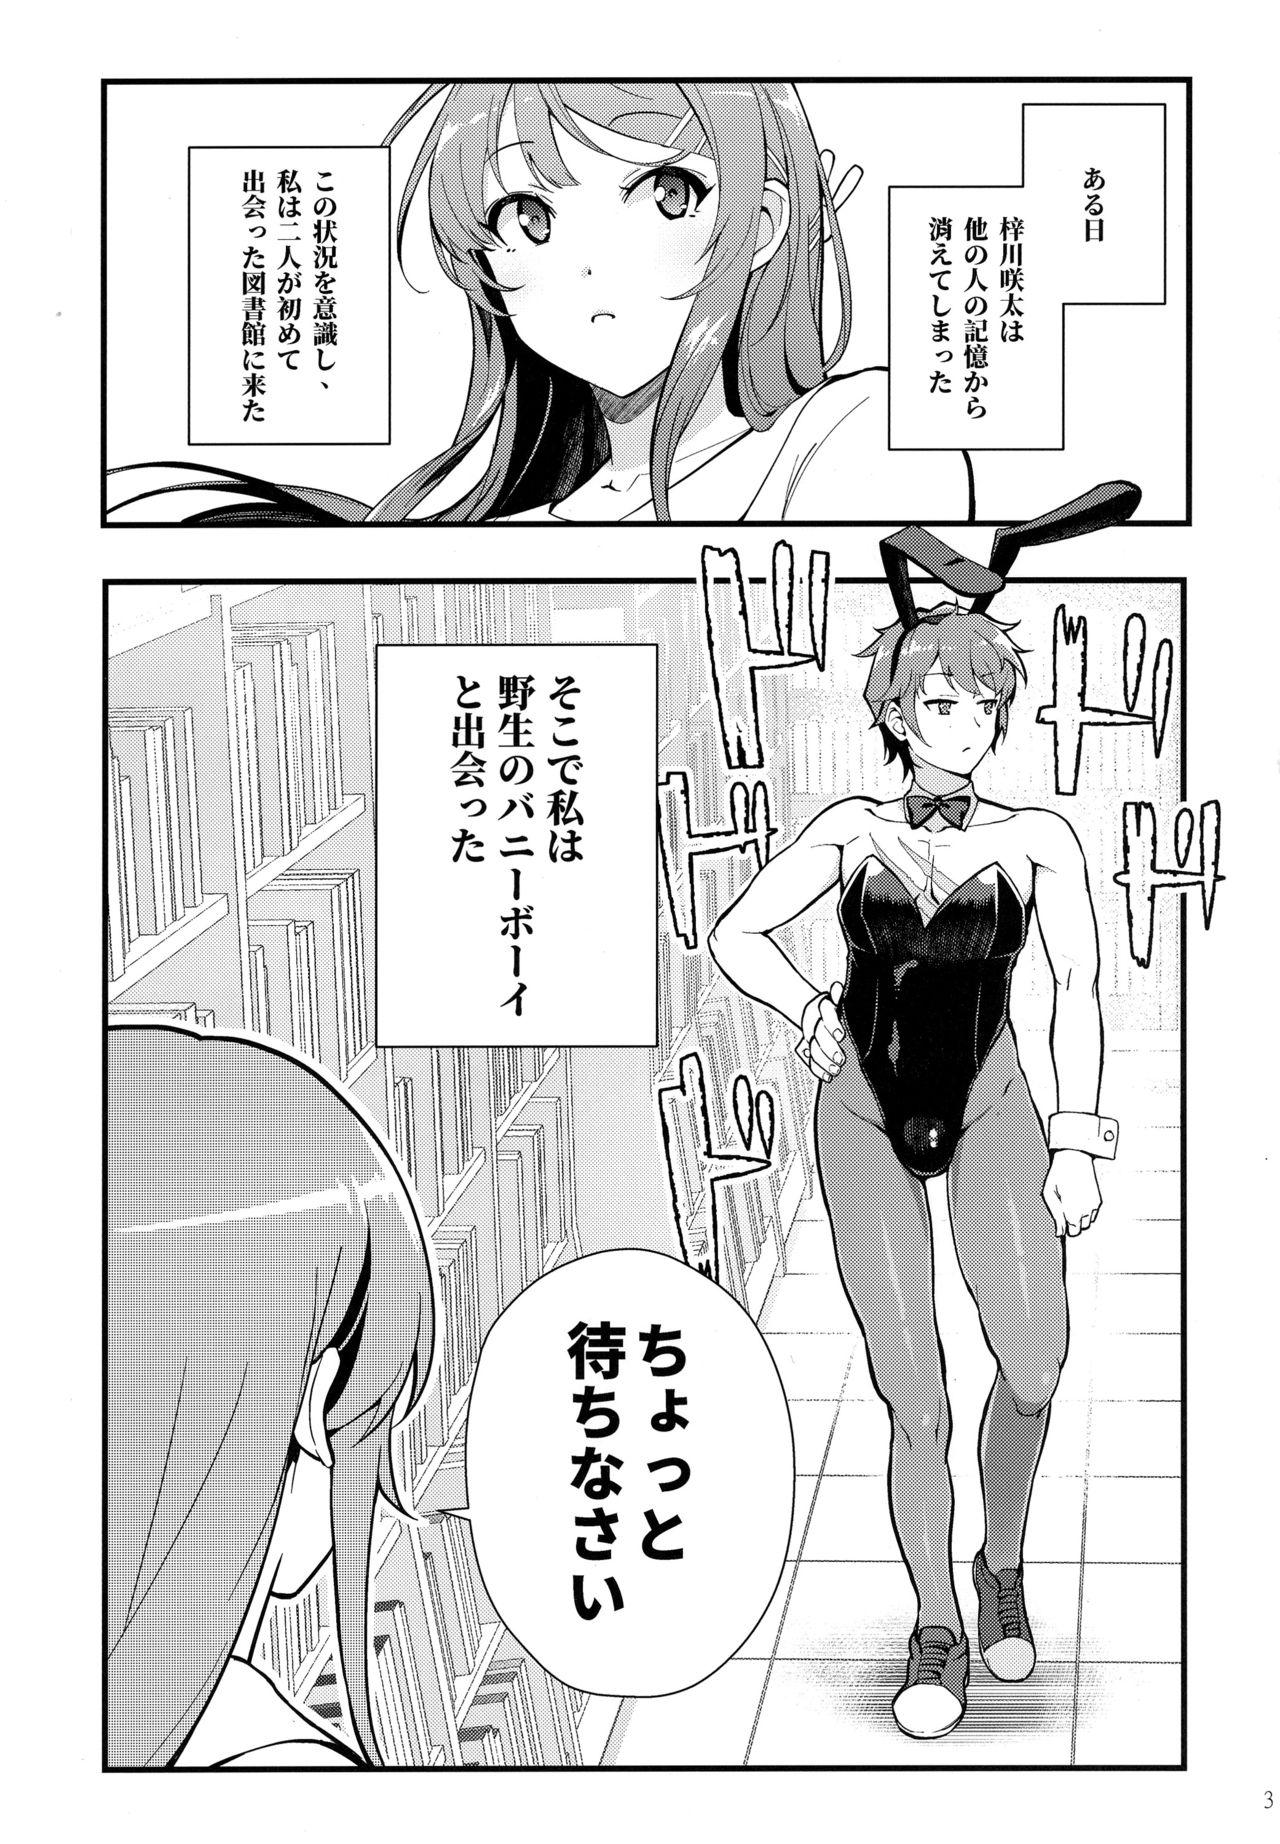 Stockings Bunny Lovers - Seishun buta yarou wa bunny girl senpai no yume o minai Gape - Page 4